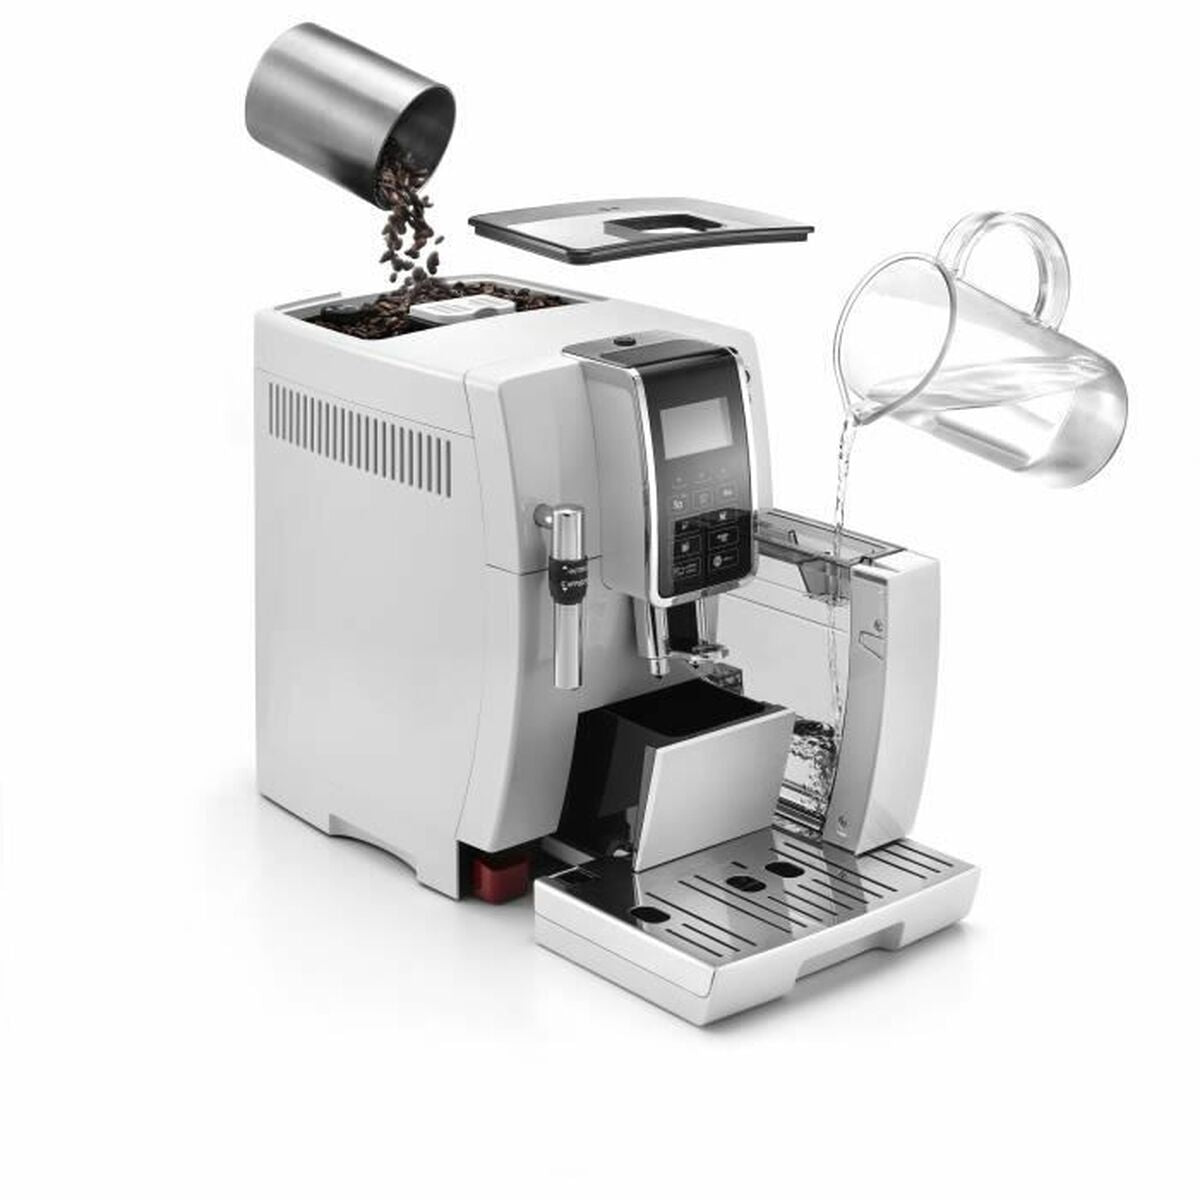 Superautomatische Kaffeemaschine DeLonghi 0132220020 1450 W Weiß 1450 W 15 bar - CA International  